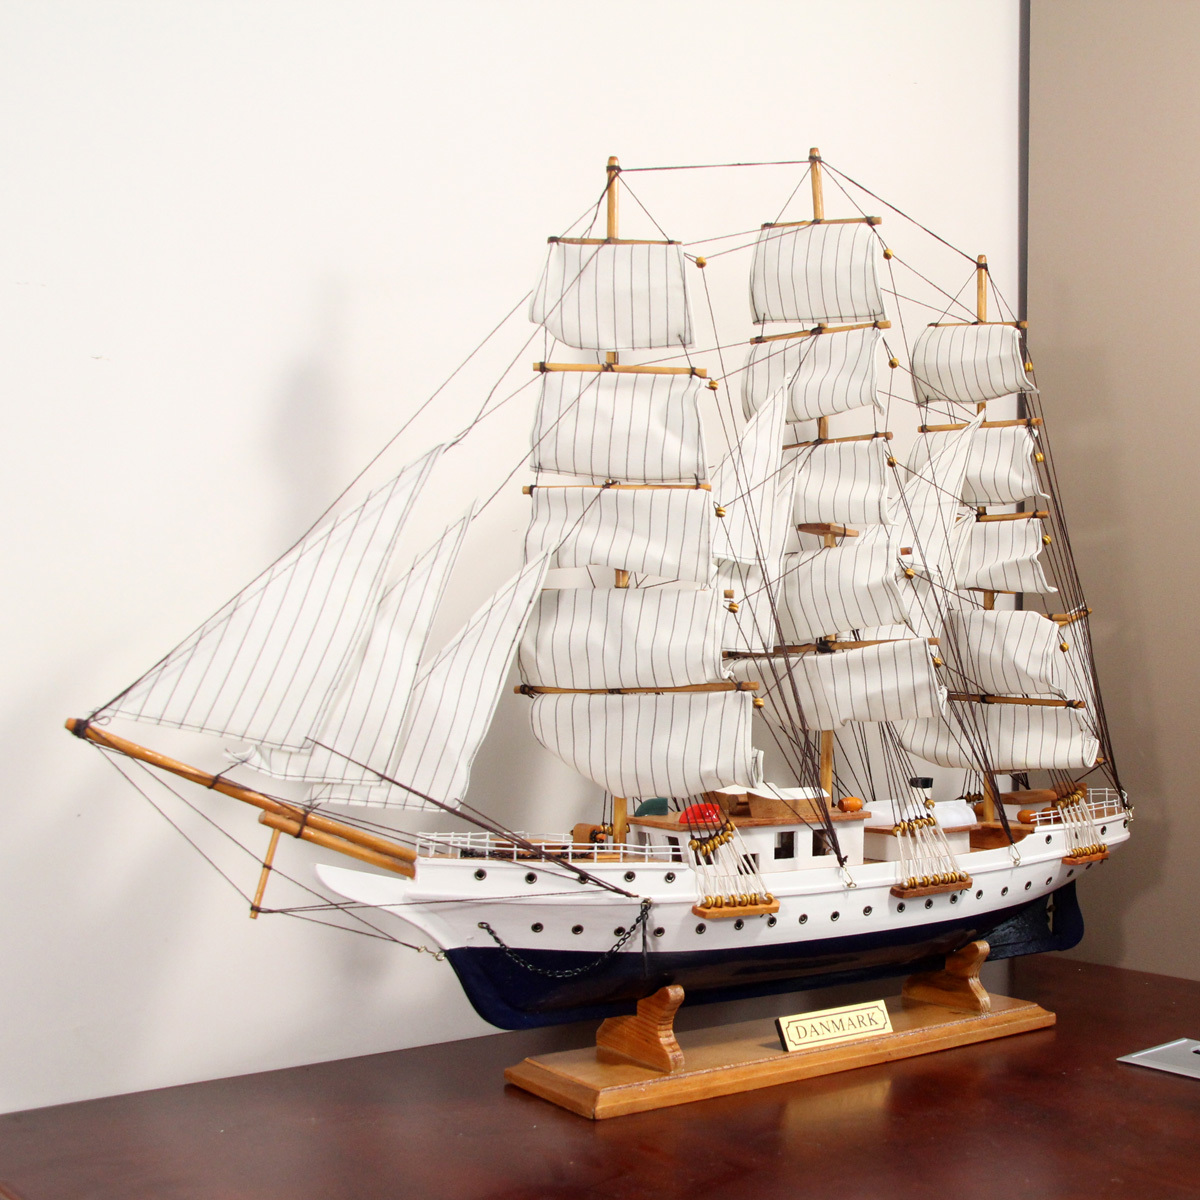 创意家居装饰品木艺工艺品咖啡厅摆件轮船摆设礼品做旧工艺船模型